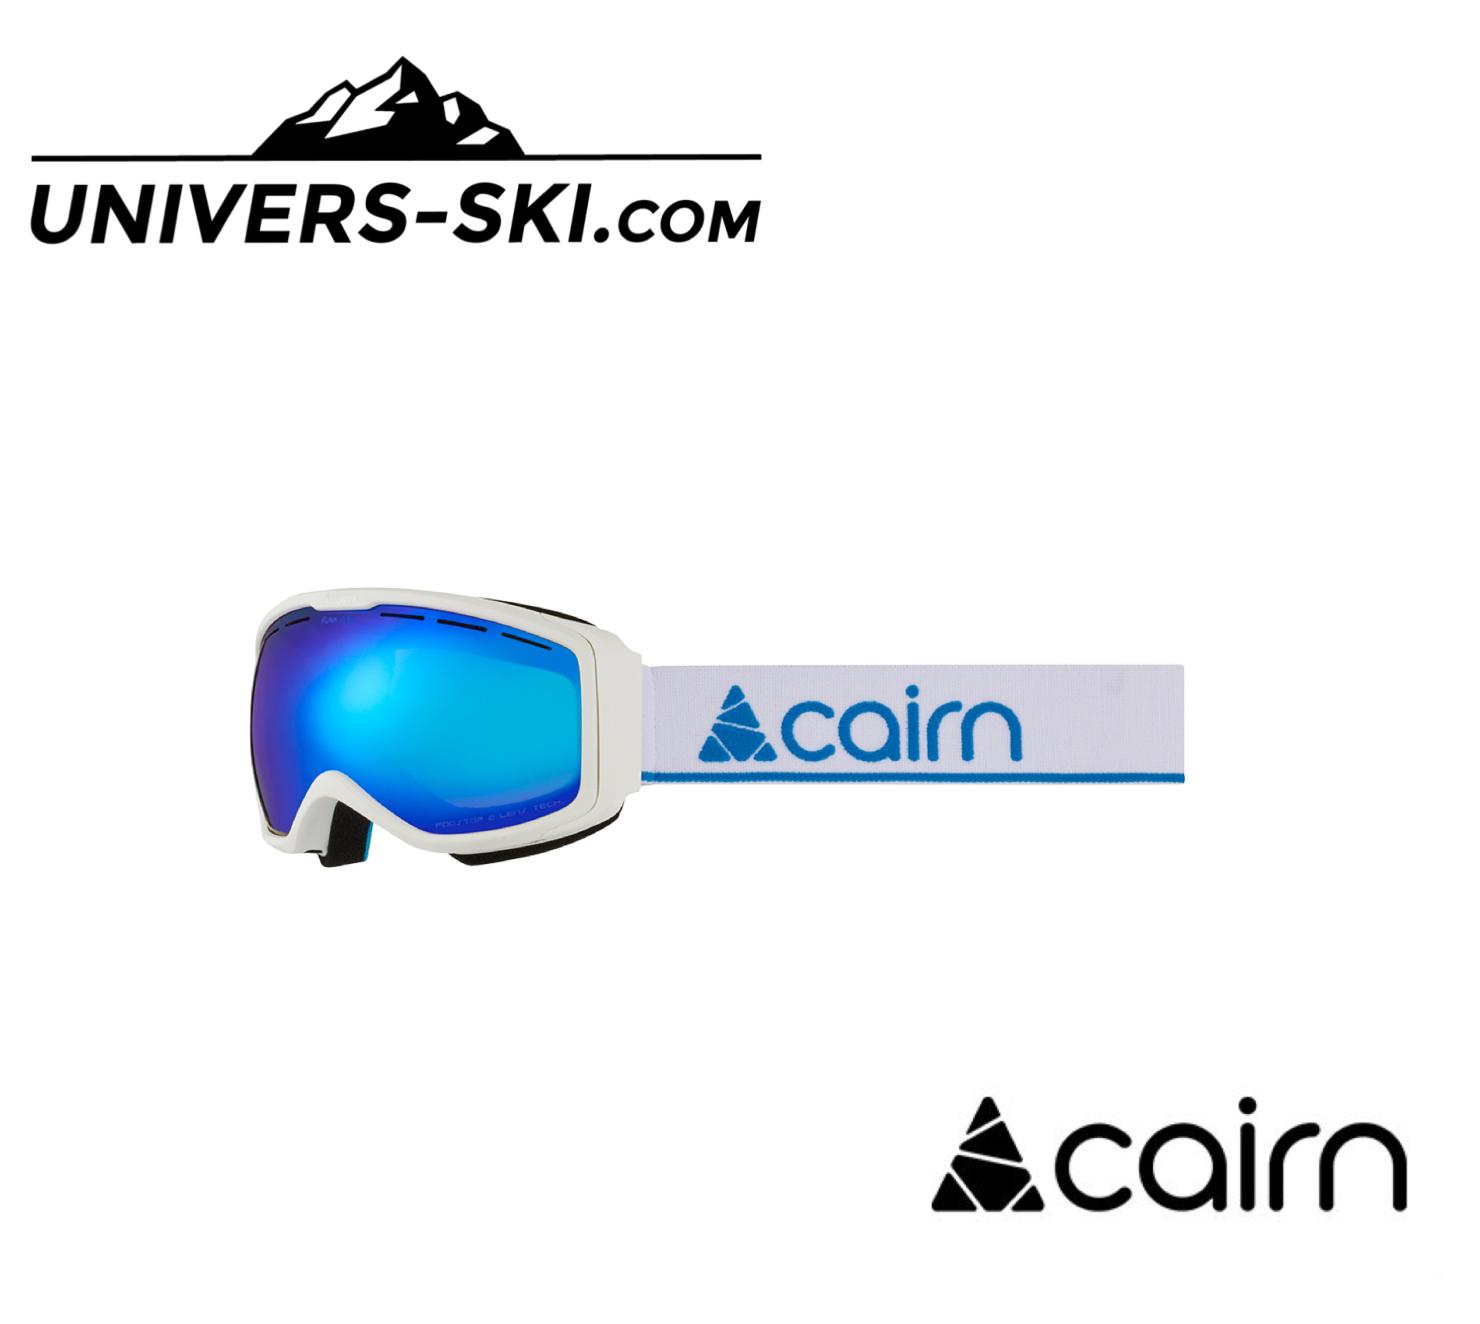 Masque de ski Cairn Junior FUNK OTG Porteurs de Lunettes Blanc